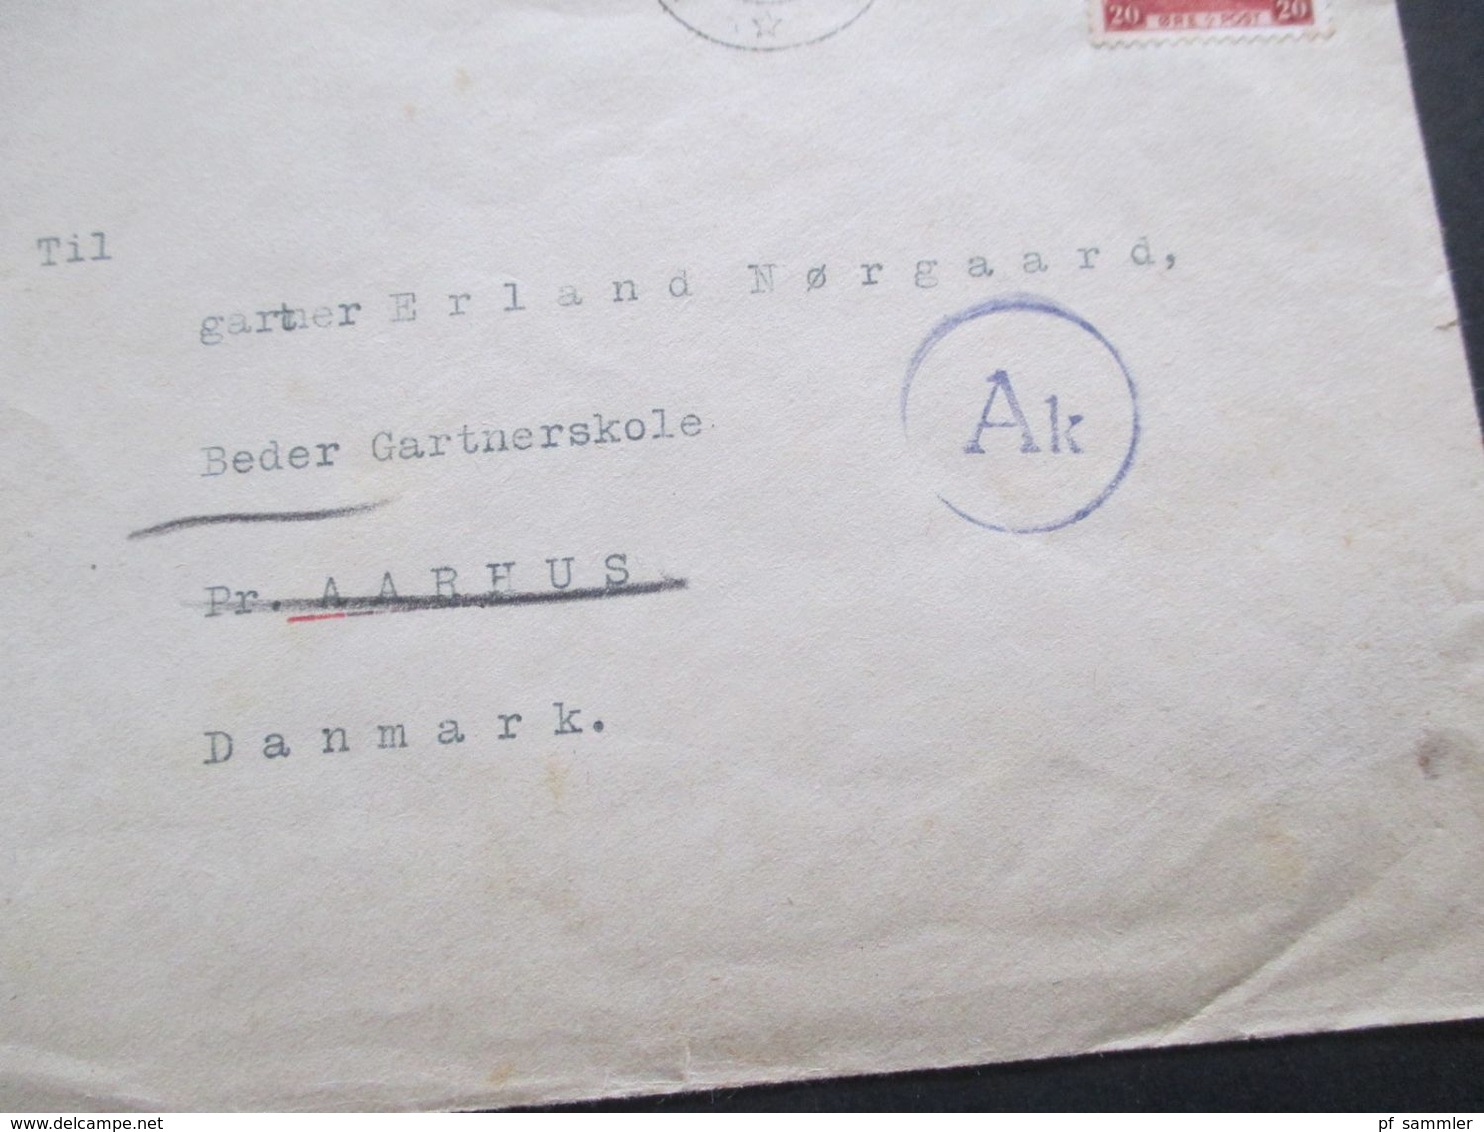 Dänemark 1941 Brief Stempel Landbrukshogskolen Ias Innerhalb Dänemarks Mit OKW Zensur / Zensurstereifen + Stempel - Cartas & Documentos